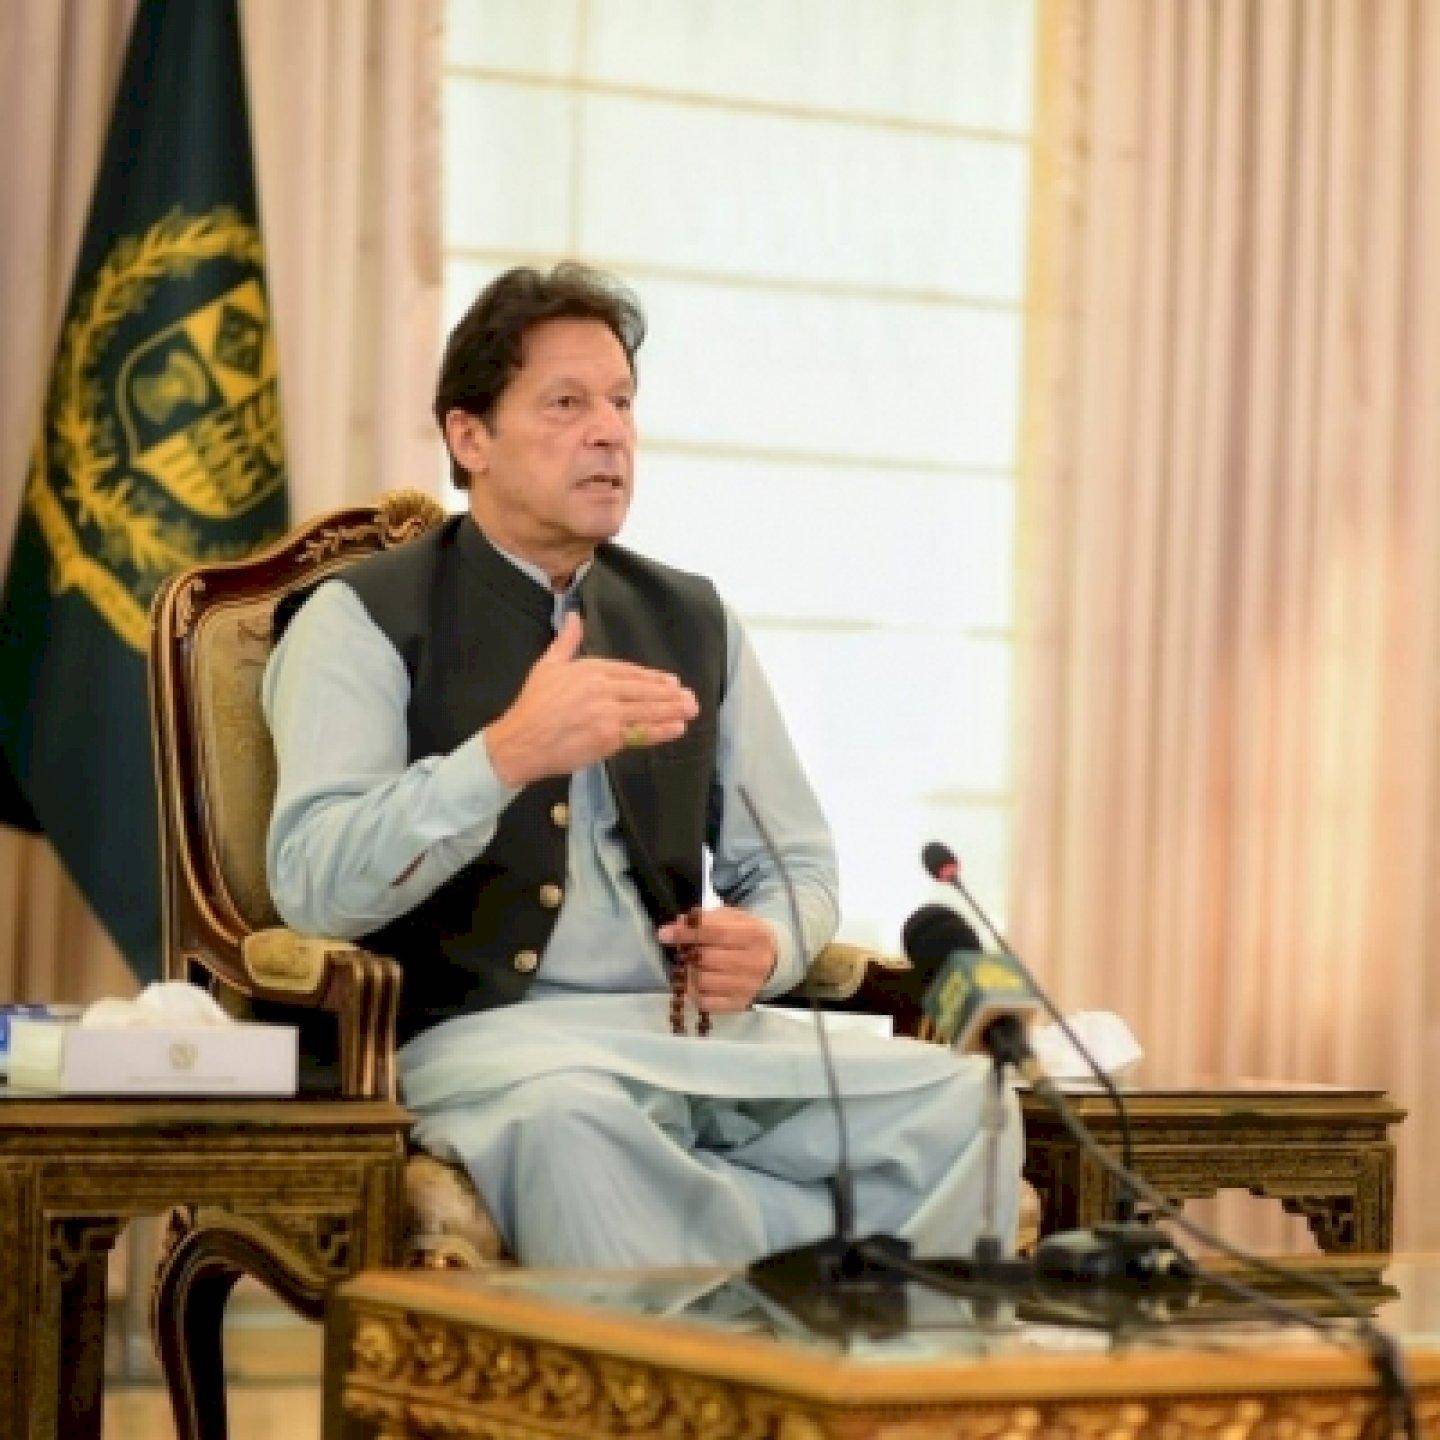 सैन्य नेतृत्व ने किसी भी मामले में कभी दबाव नहीं डाला : Imran Khan